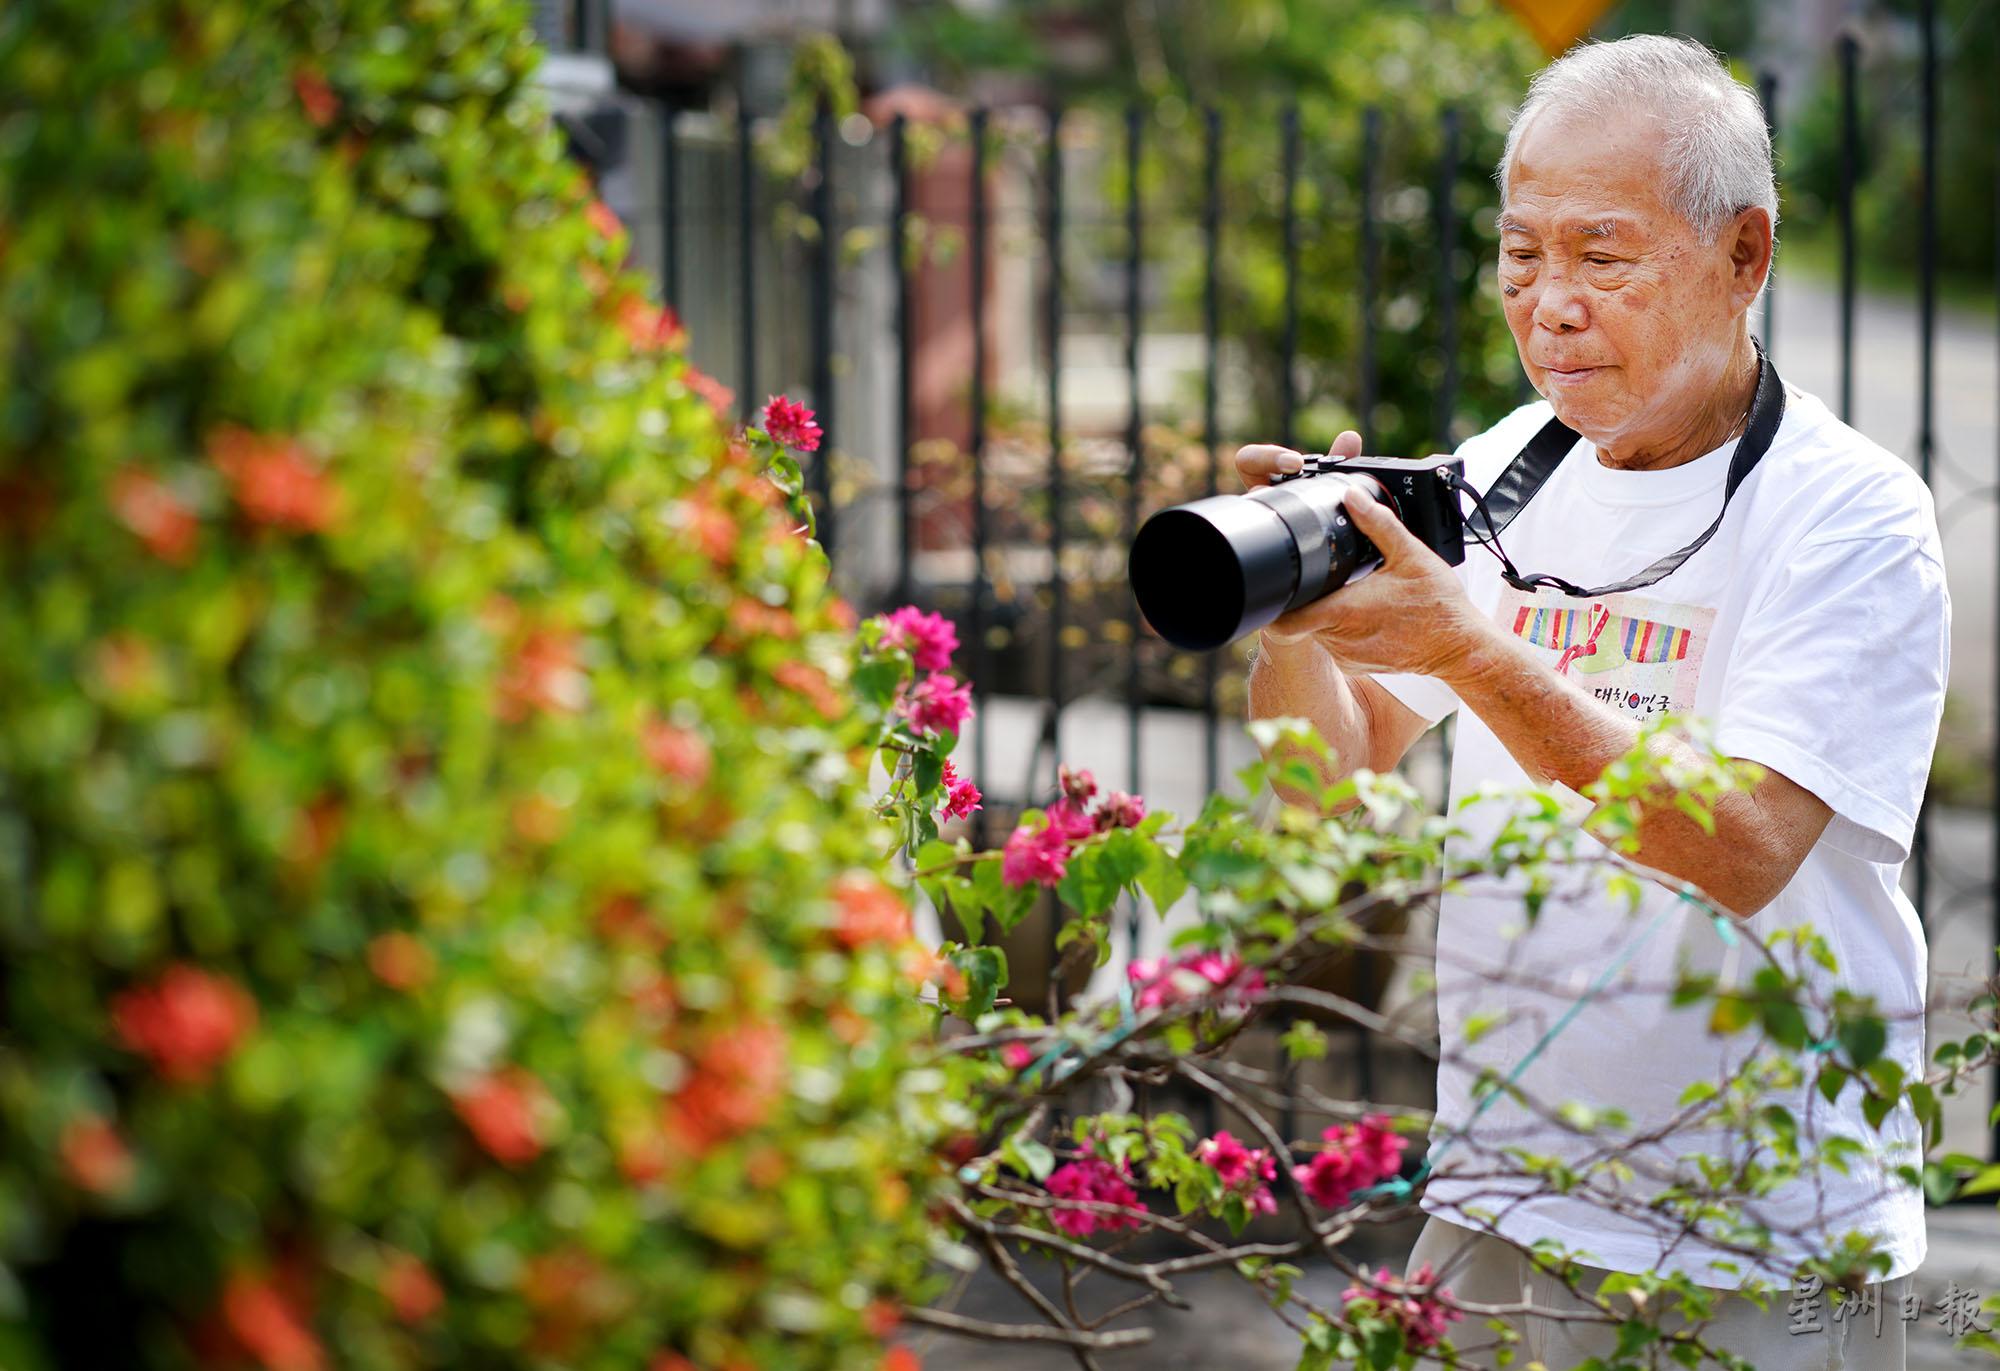 由于受疫情影响无法出国，欧锦华偶尔会带著相机在住家附近拍摄大自然之美。